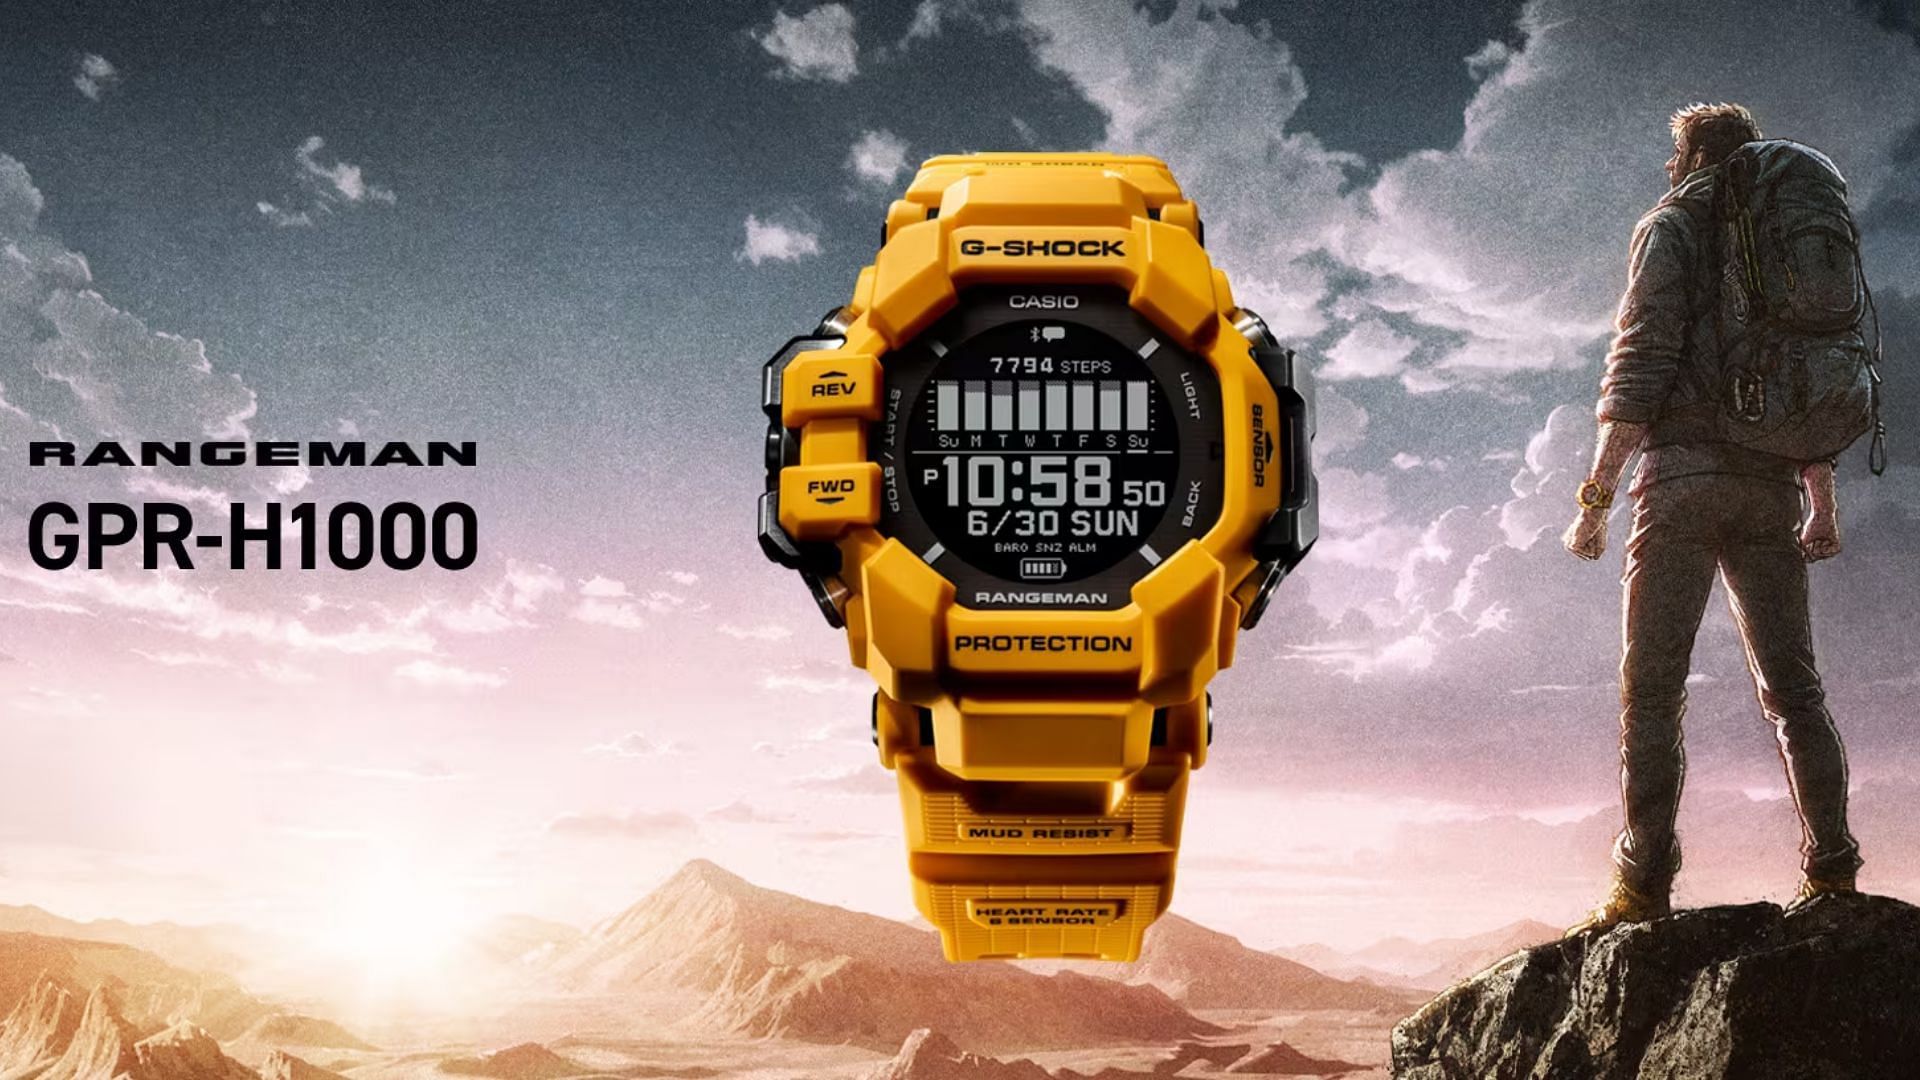 G-SHOCK Rangeman GPR-H1000 watch